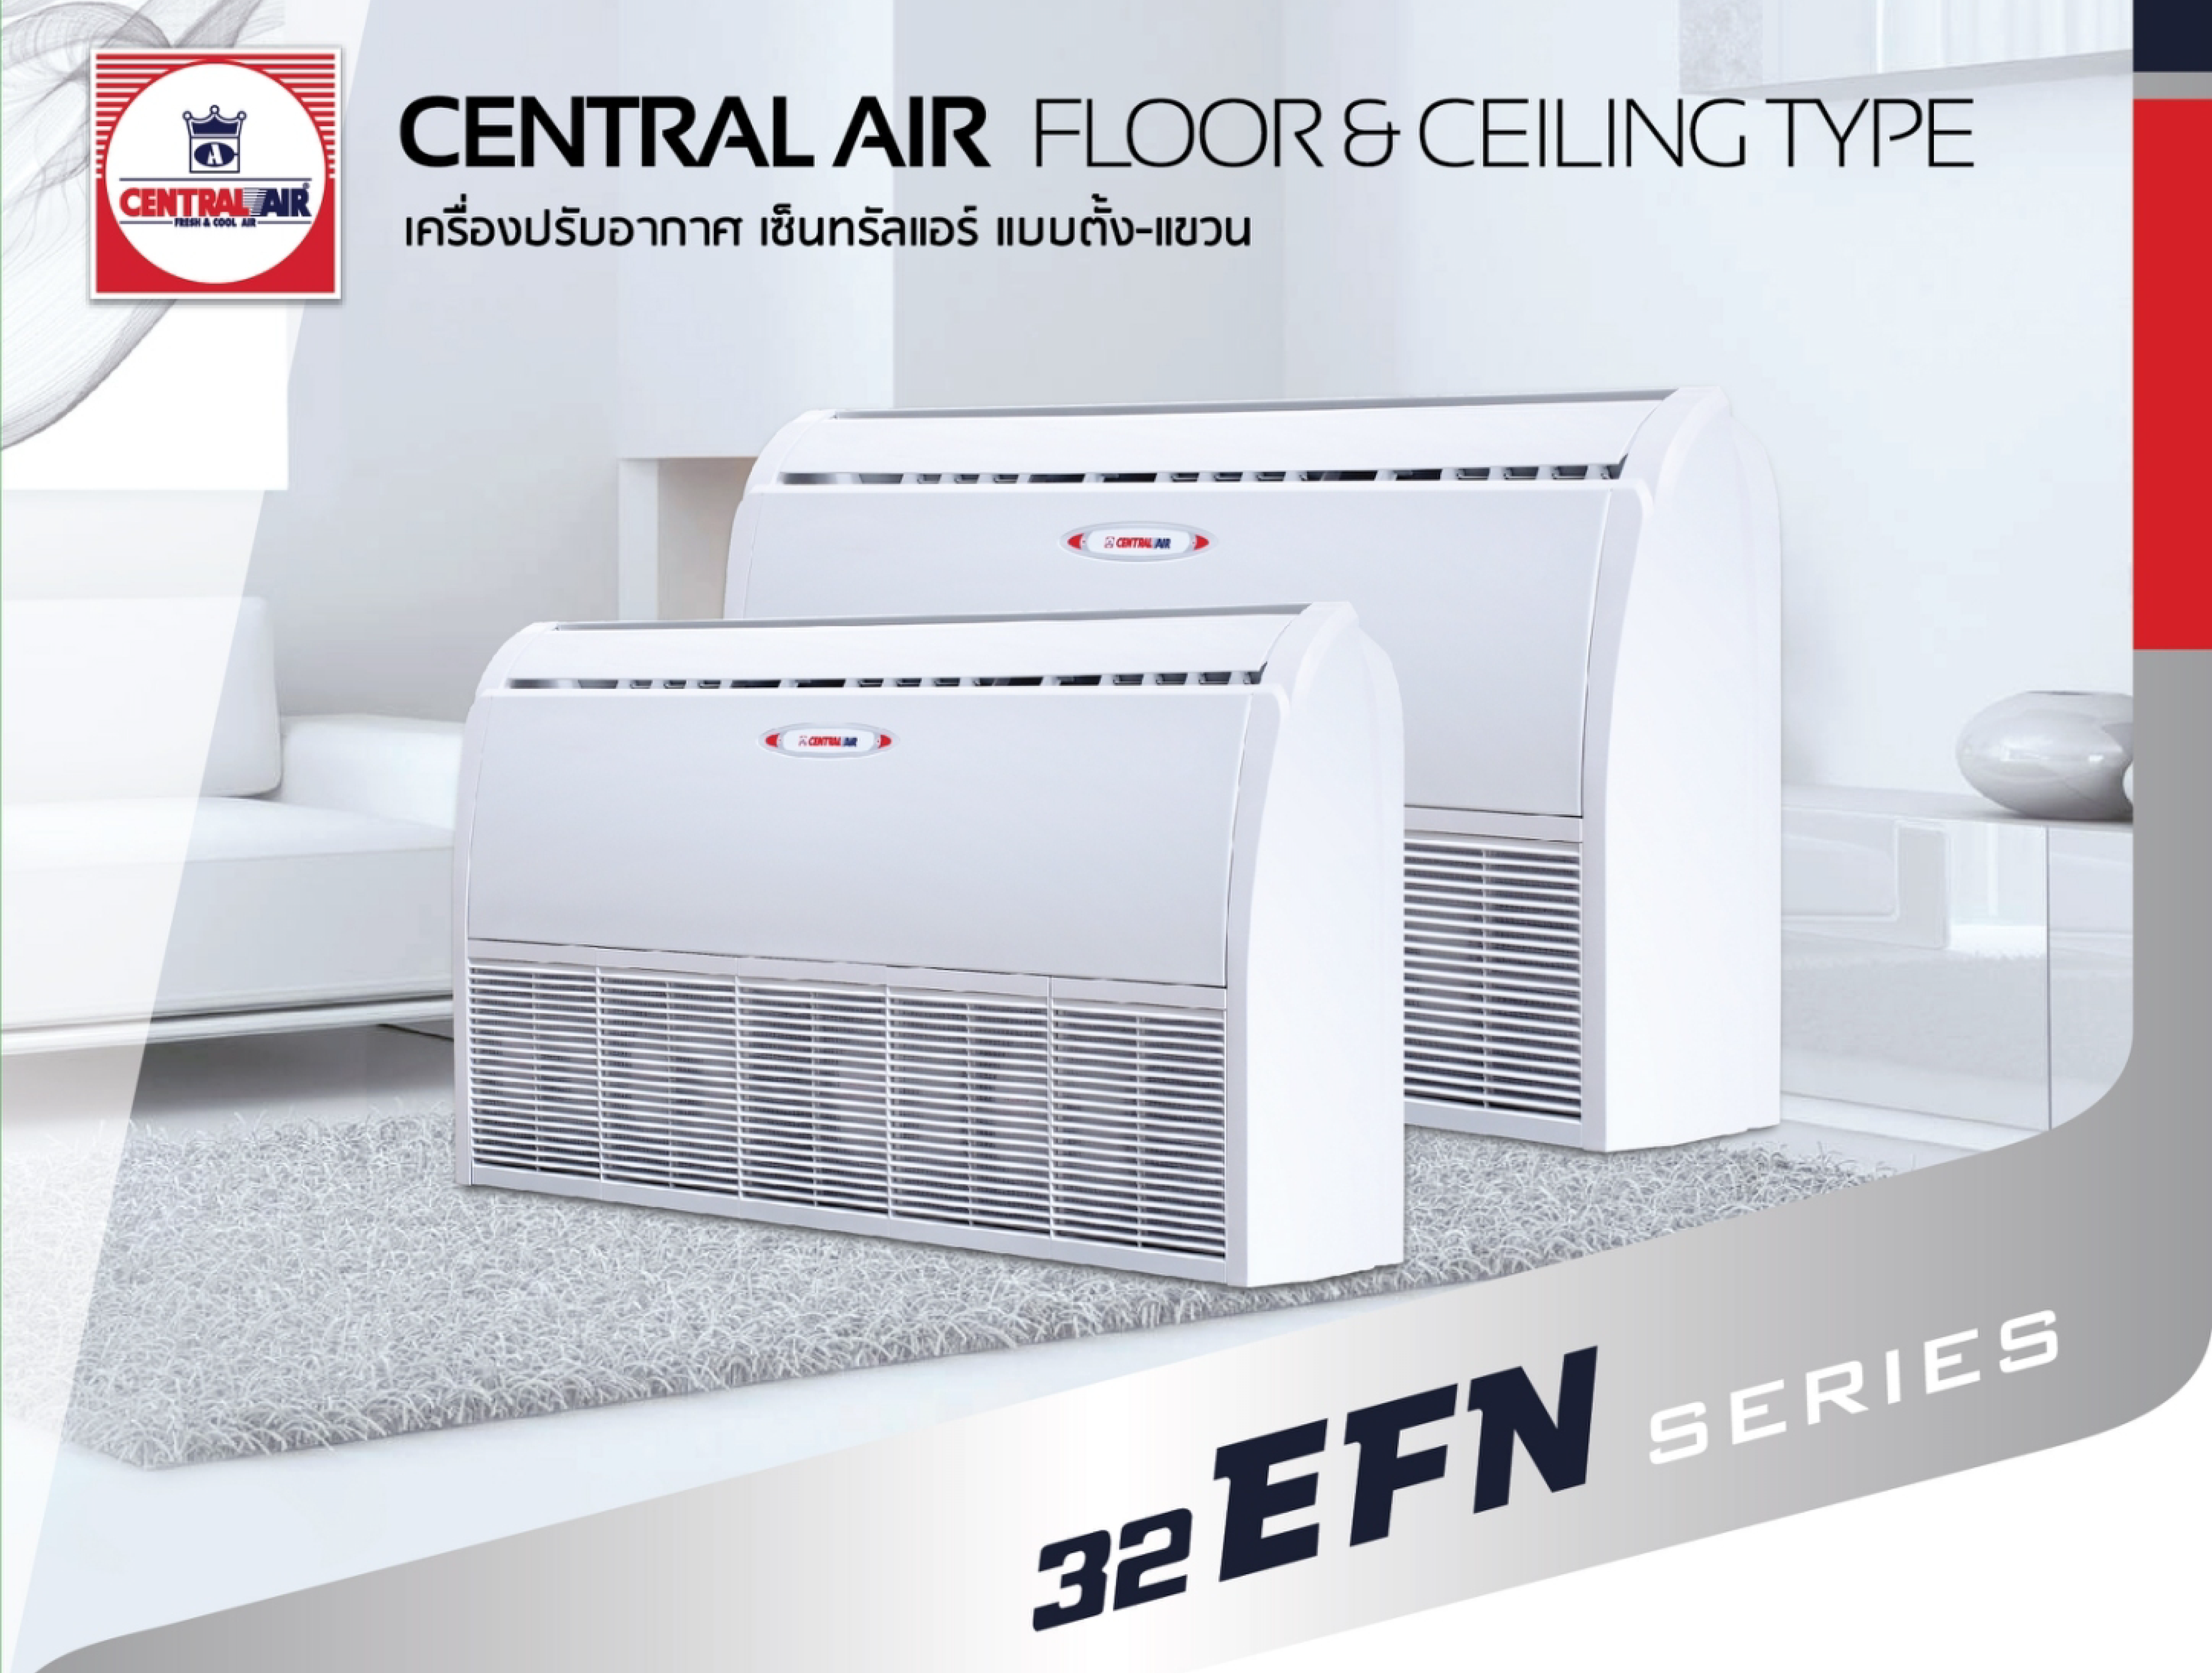 2021_floor_ceiling_CFH-32EFN-1.png